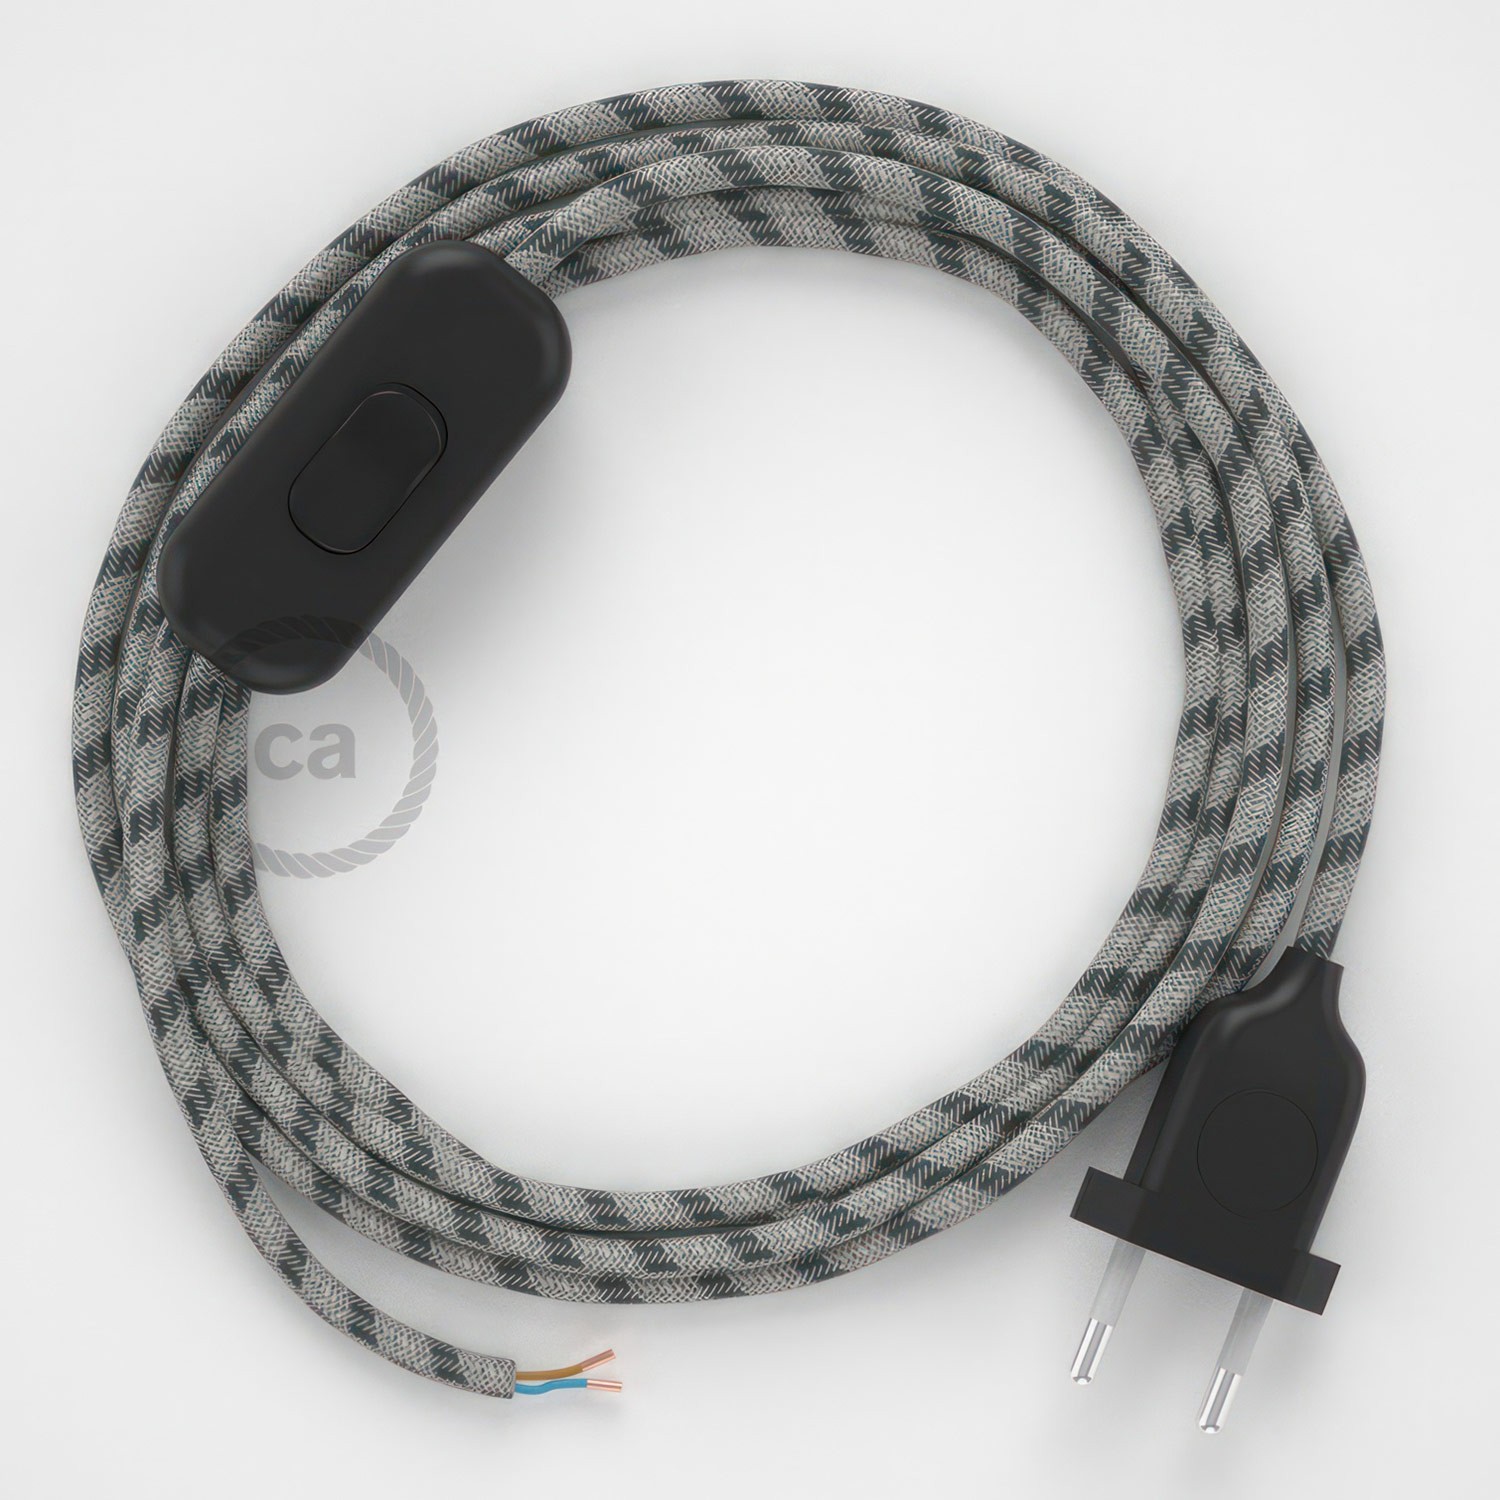 Cableado para lámpara, cable RD54 Algodón y Lino Stripes Antracita 1,8m. Elige tu el color de la clavija y del interruptor!